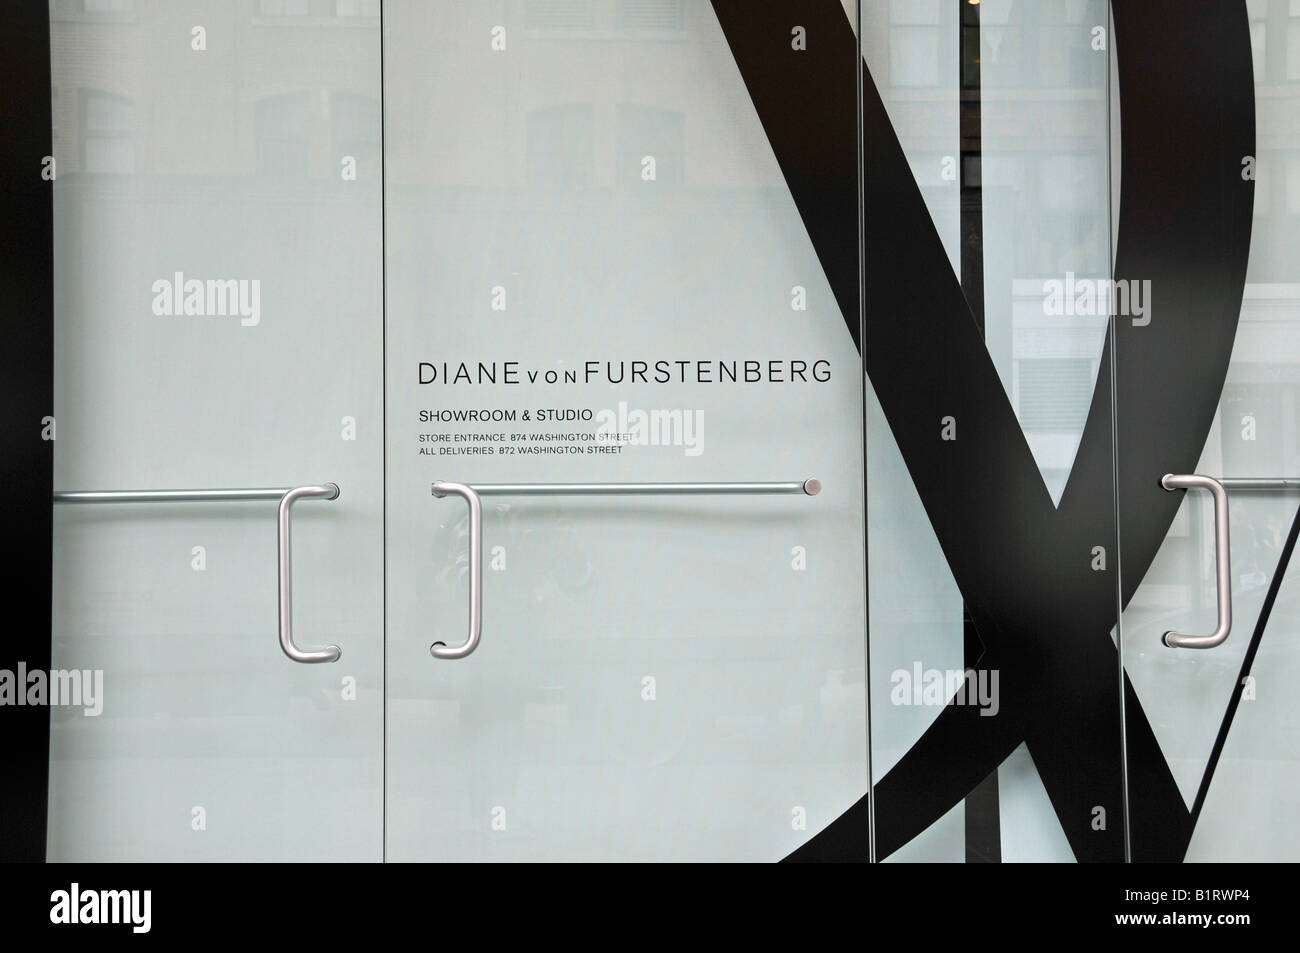 Diane von Furstenberg, fashion designer, retail outlet in Manhattan, New York City, USA Stock Photo